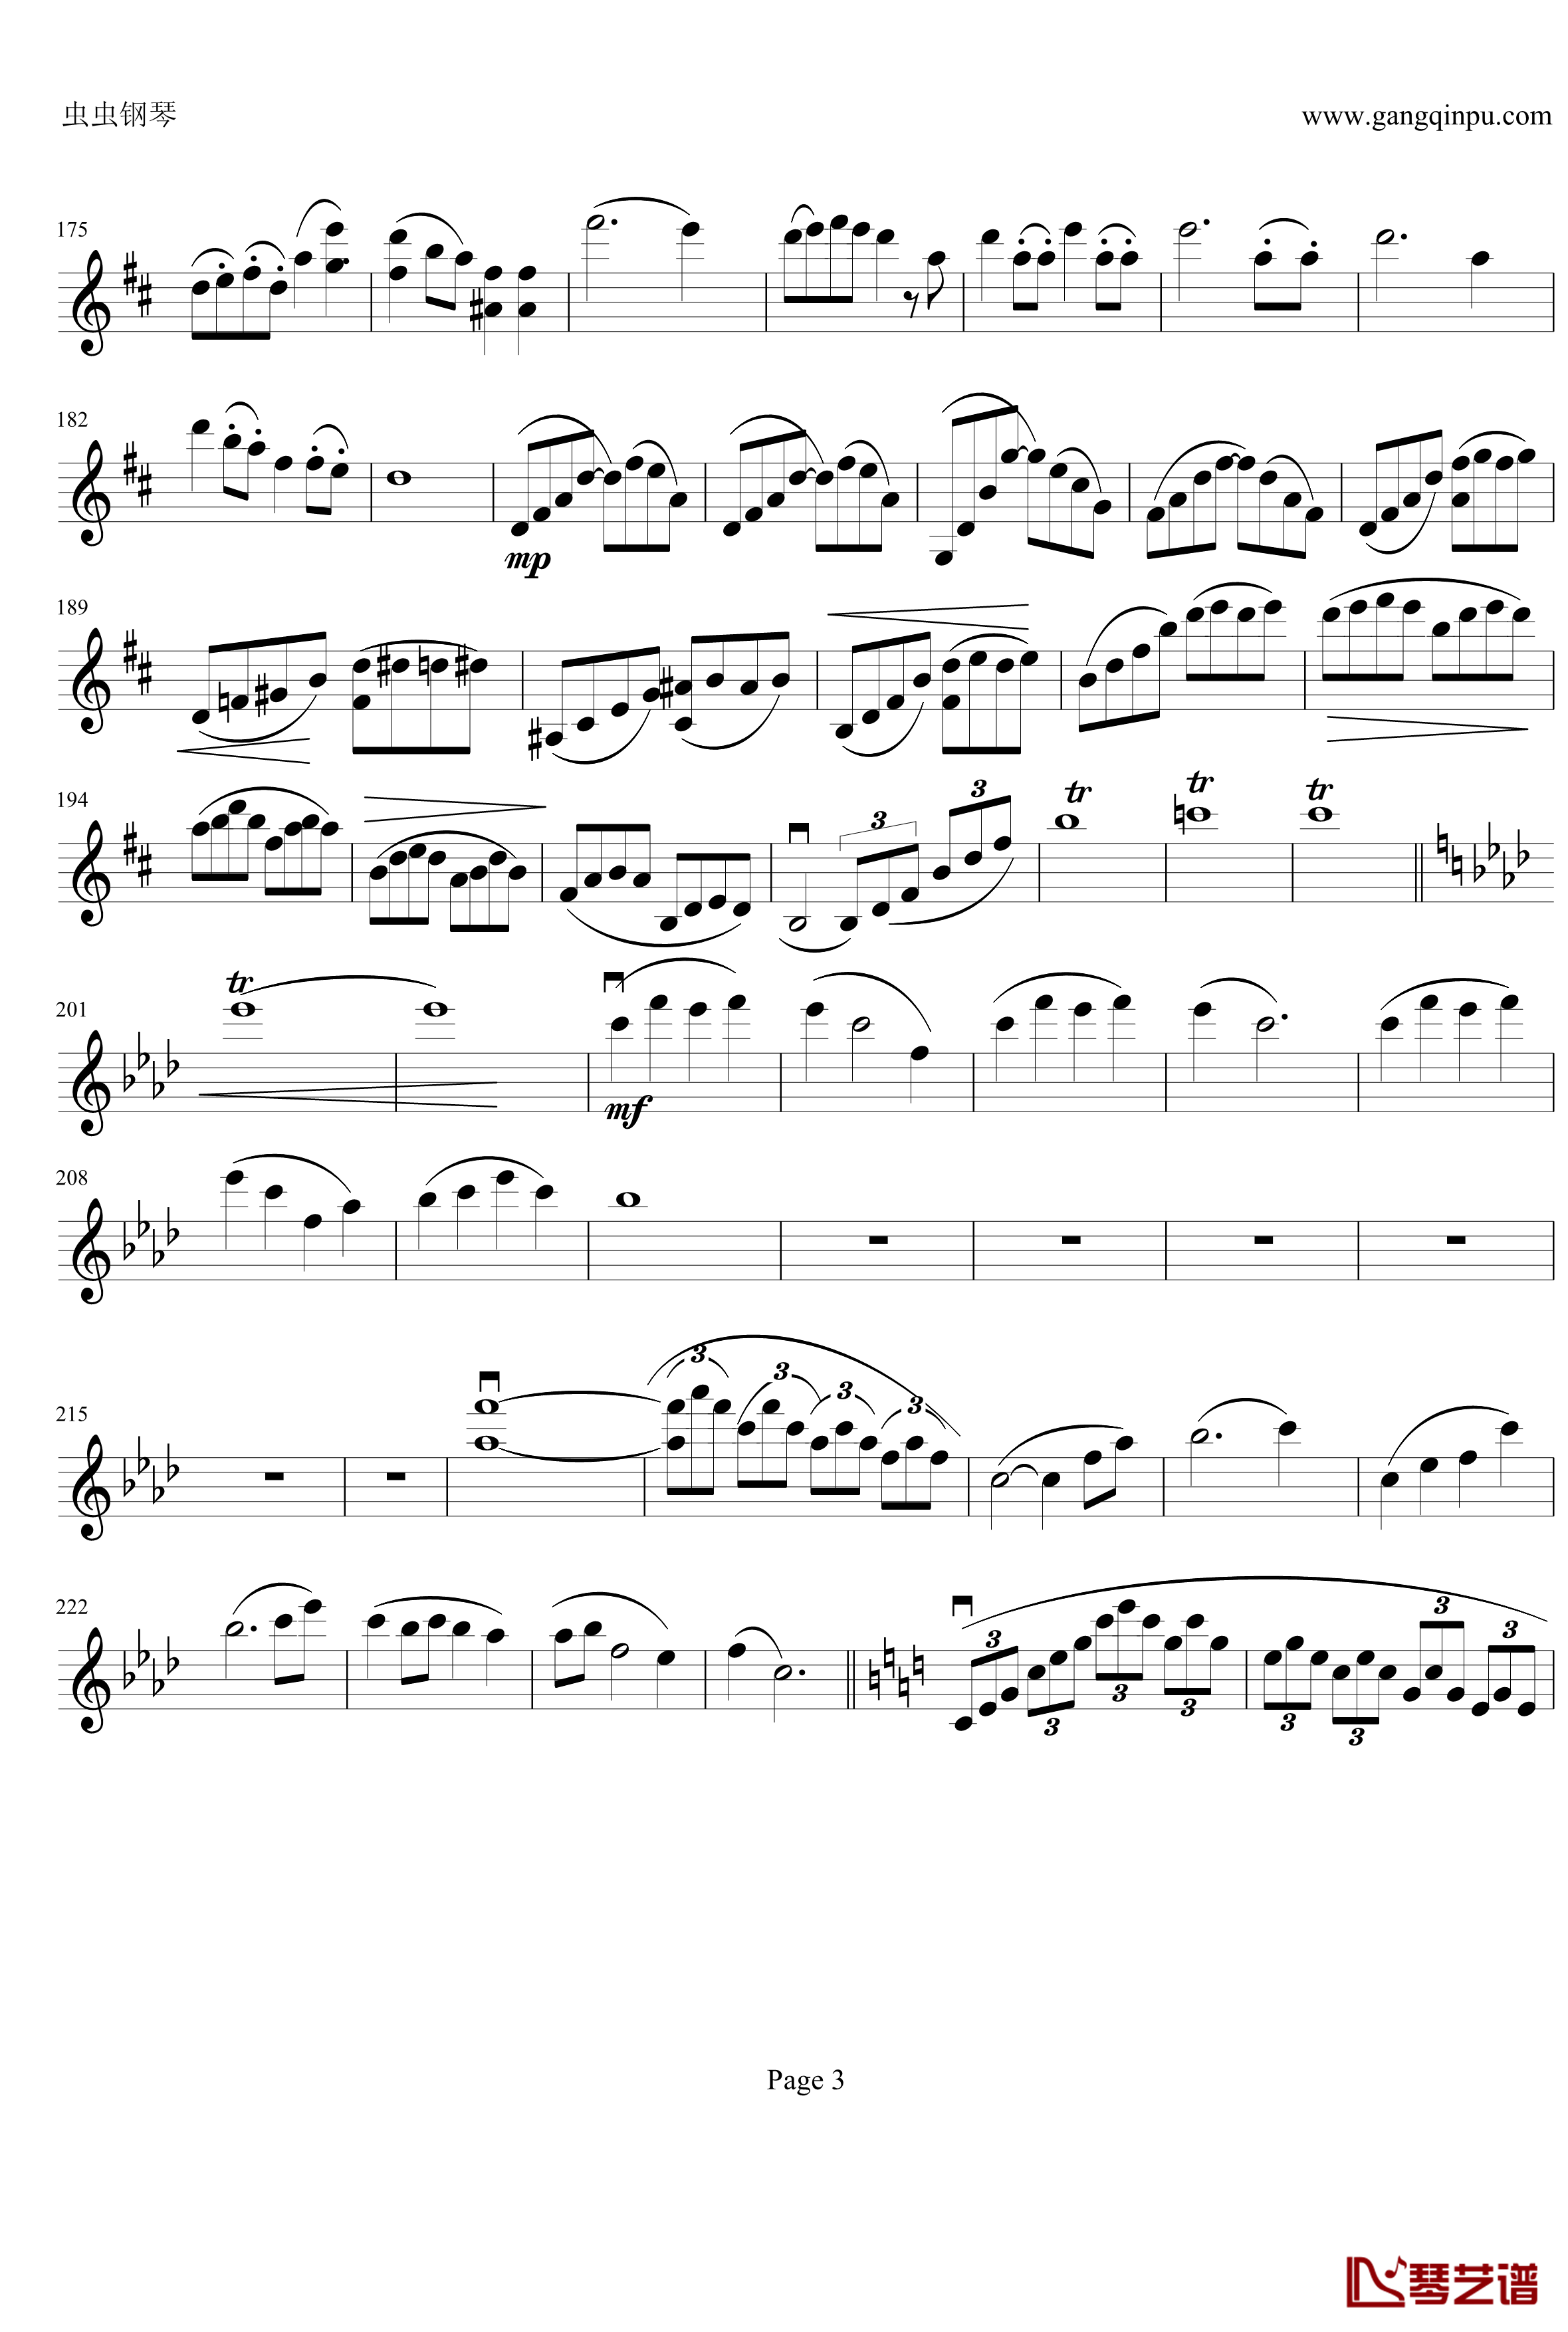 云南风情钢琴谱-第一乐章-b小调小提琴协奏曲-项道荣3